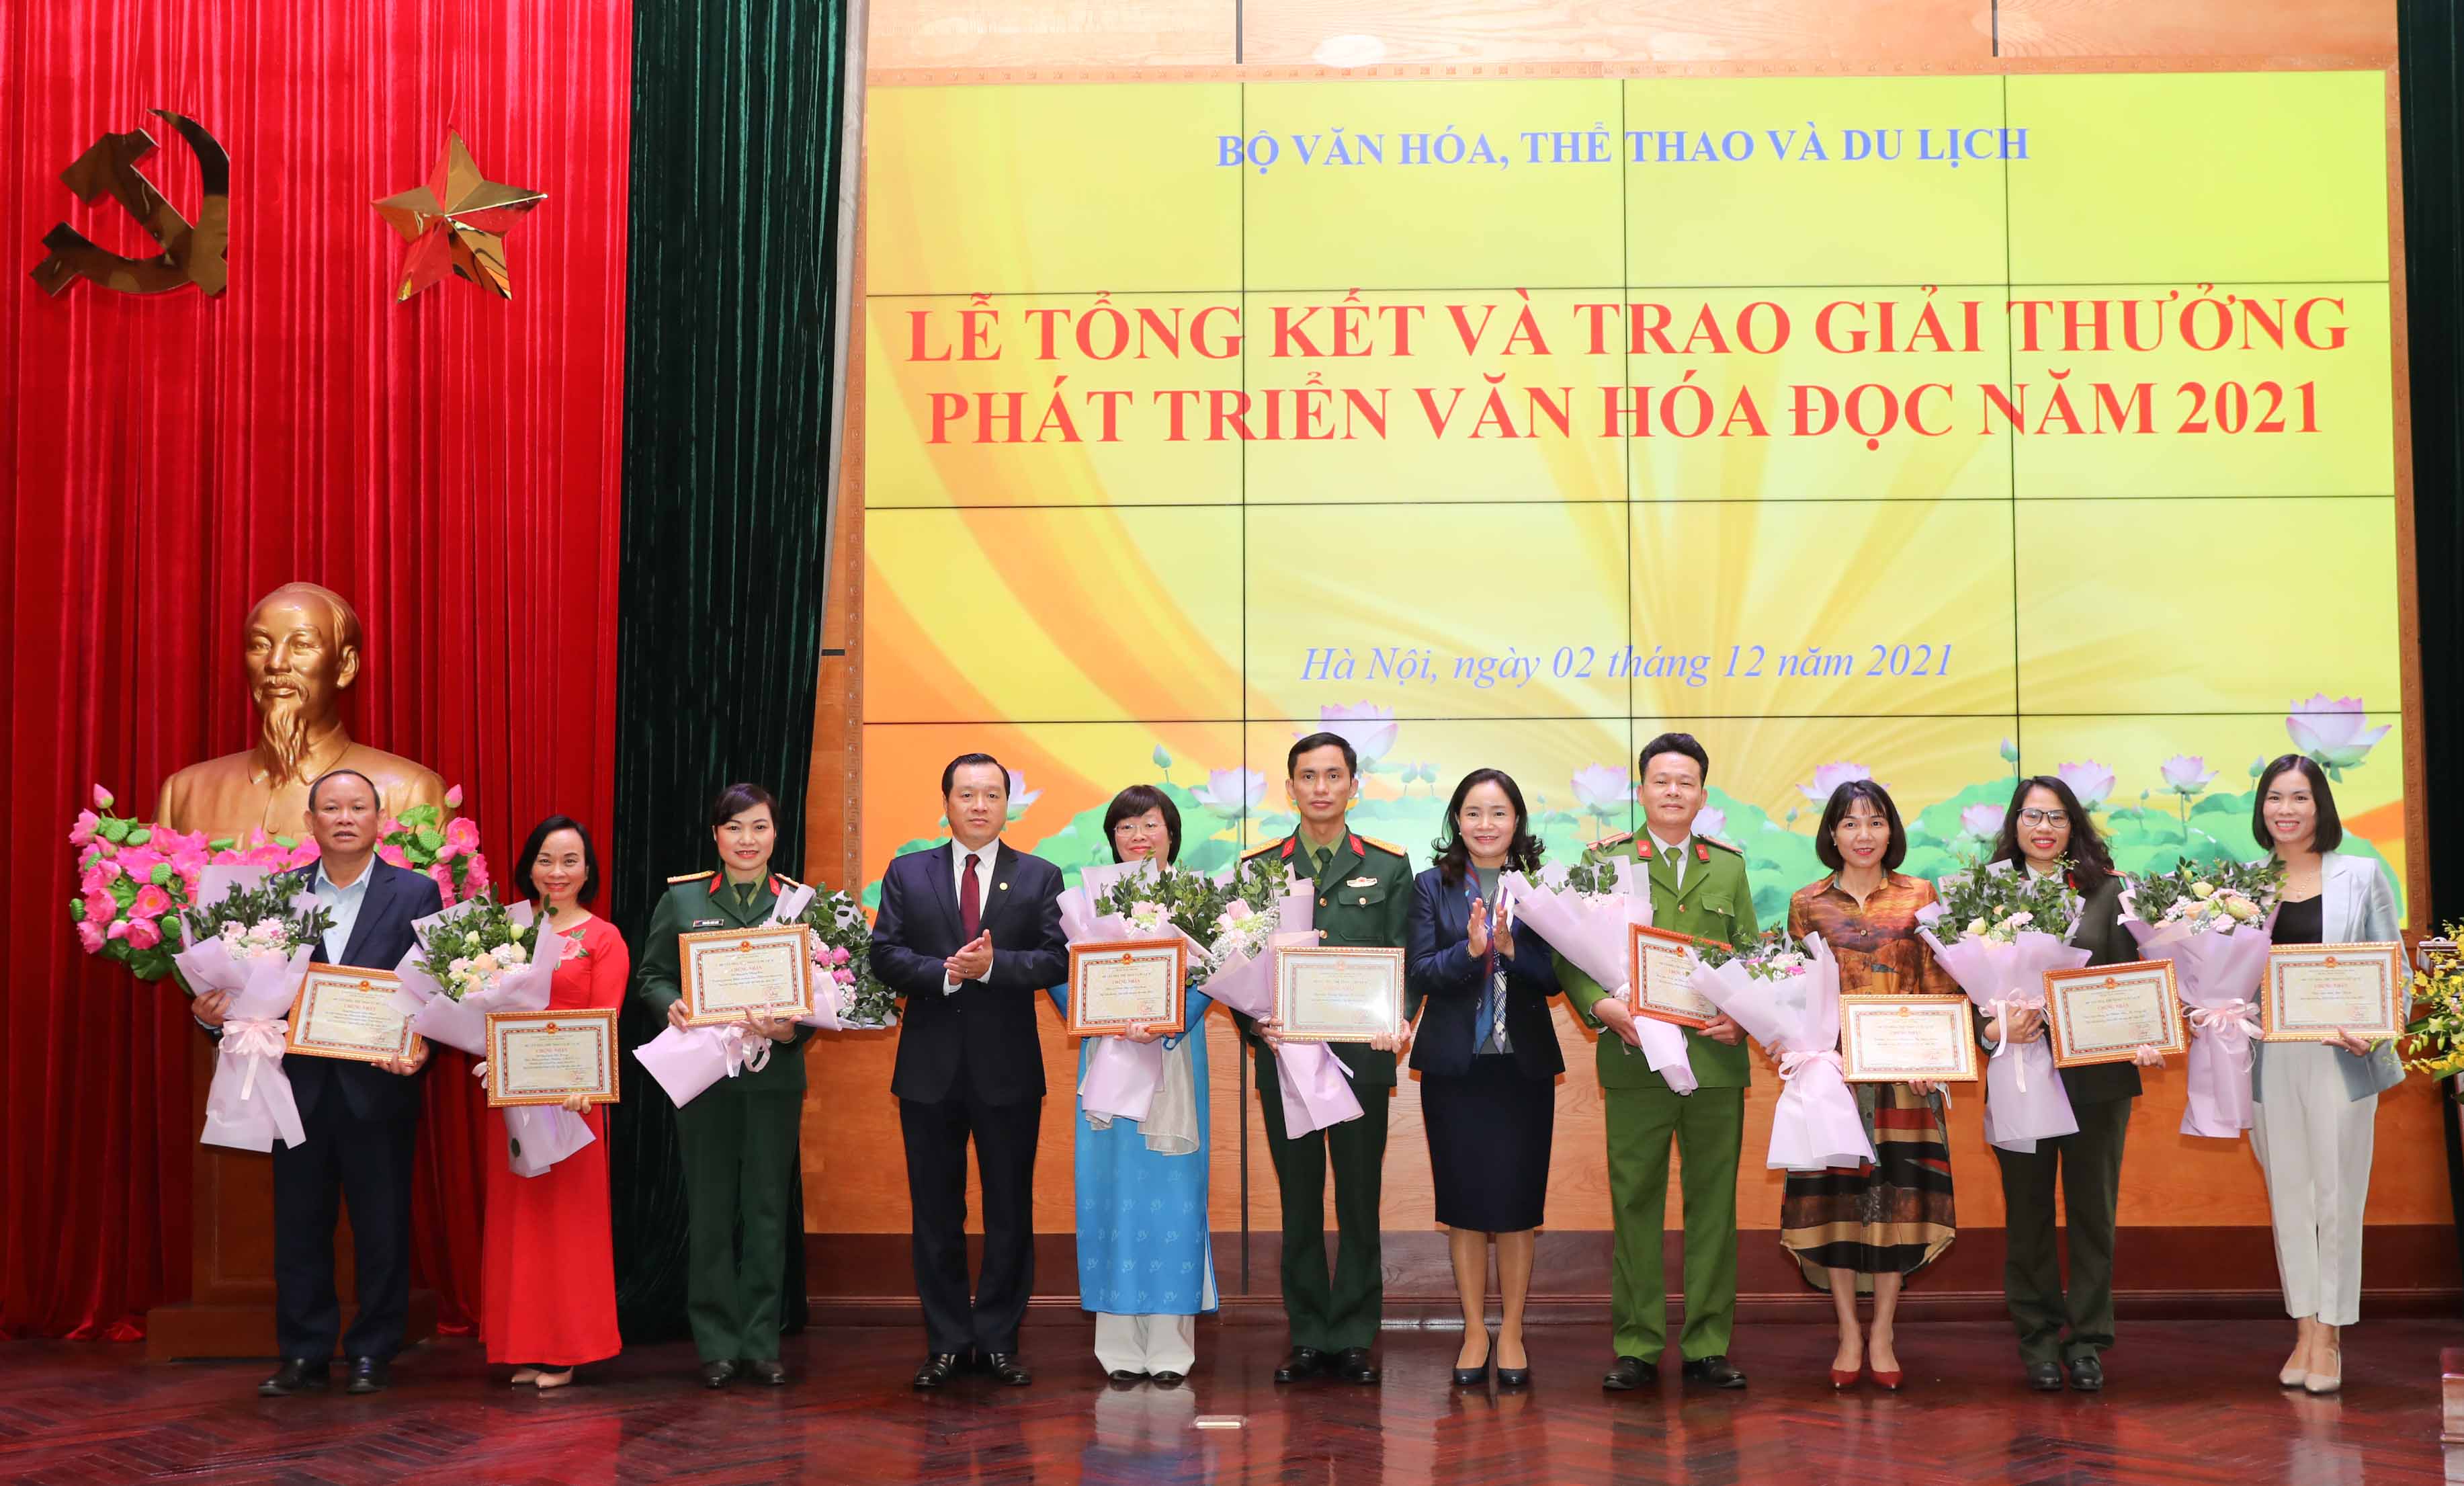 Ông Nguyễn Đức Thái – Chủ tịch HĐTV NXBGDVN nhận Giải thưởng Phát triển Văn hóa đọc năm 2021